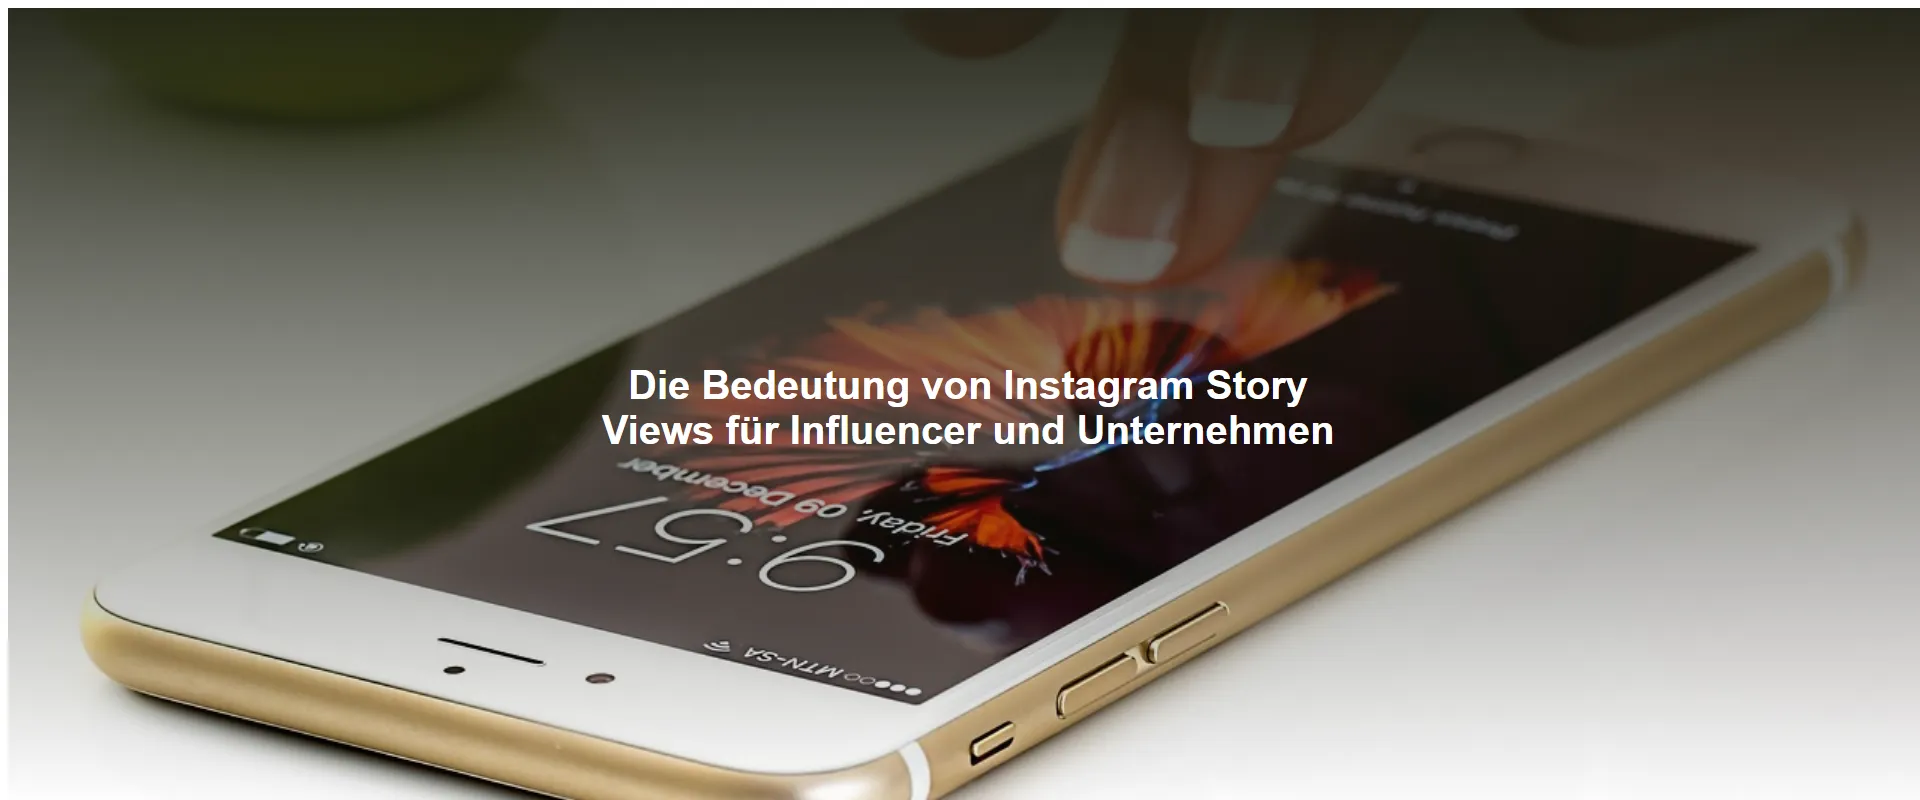 Die Bedeutung von Instagram Story Views für Influencer und Unternehmen